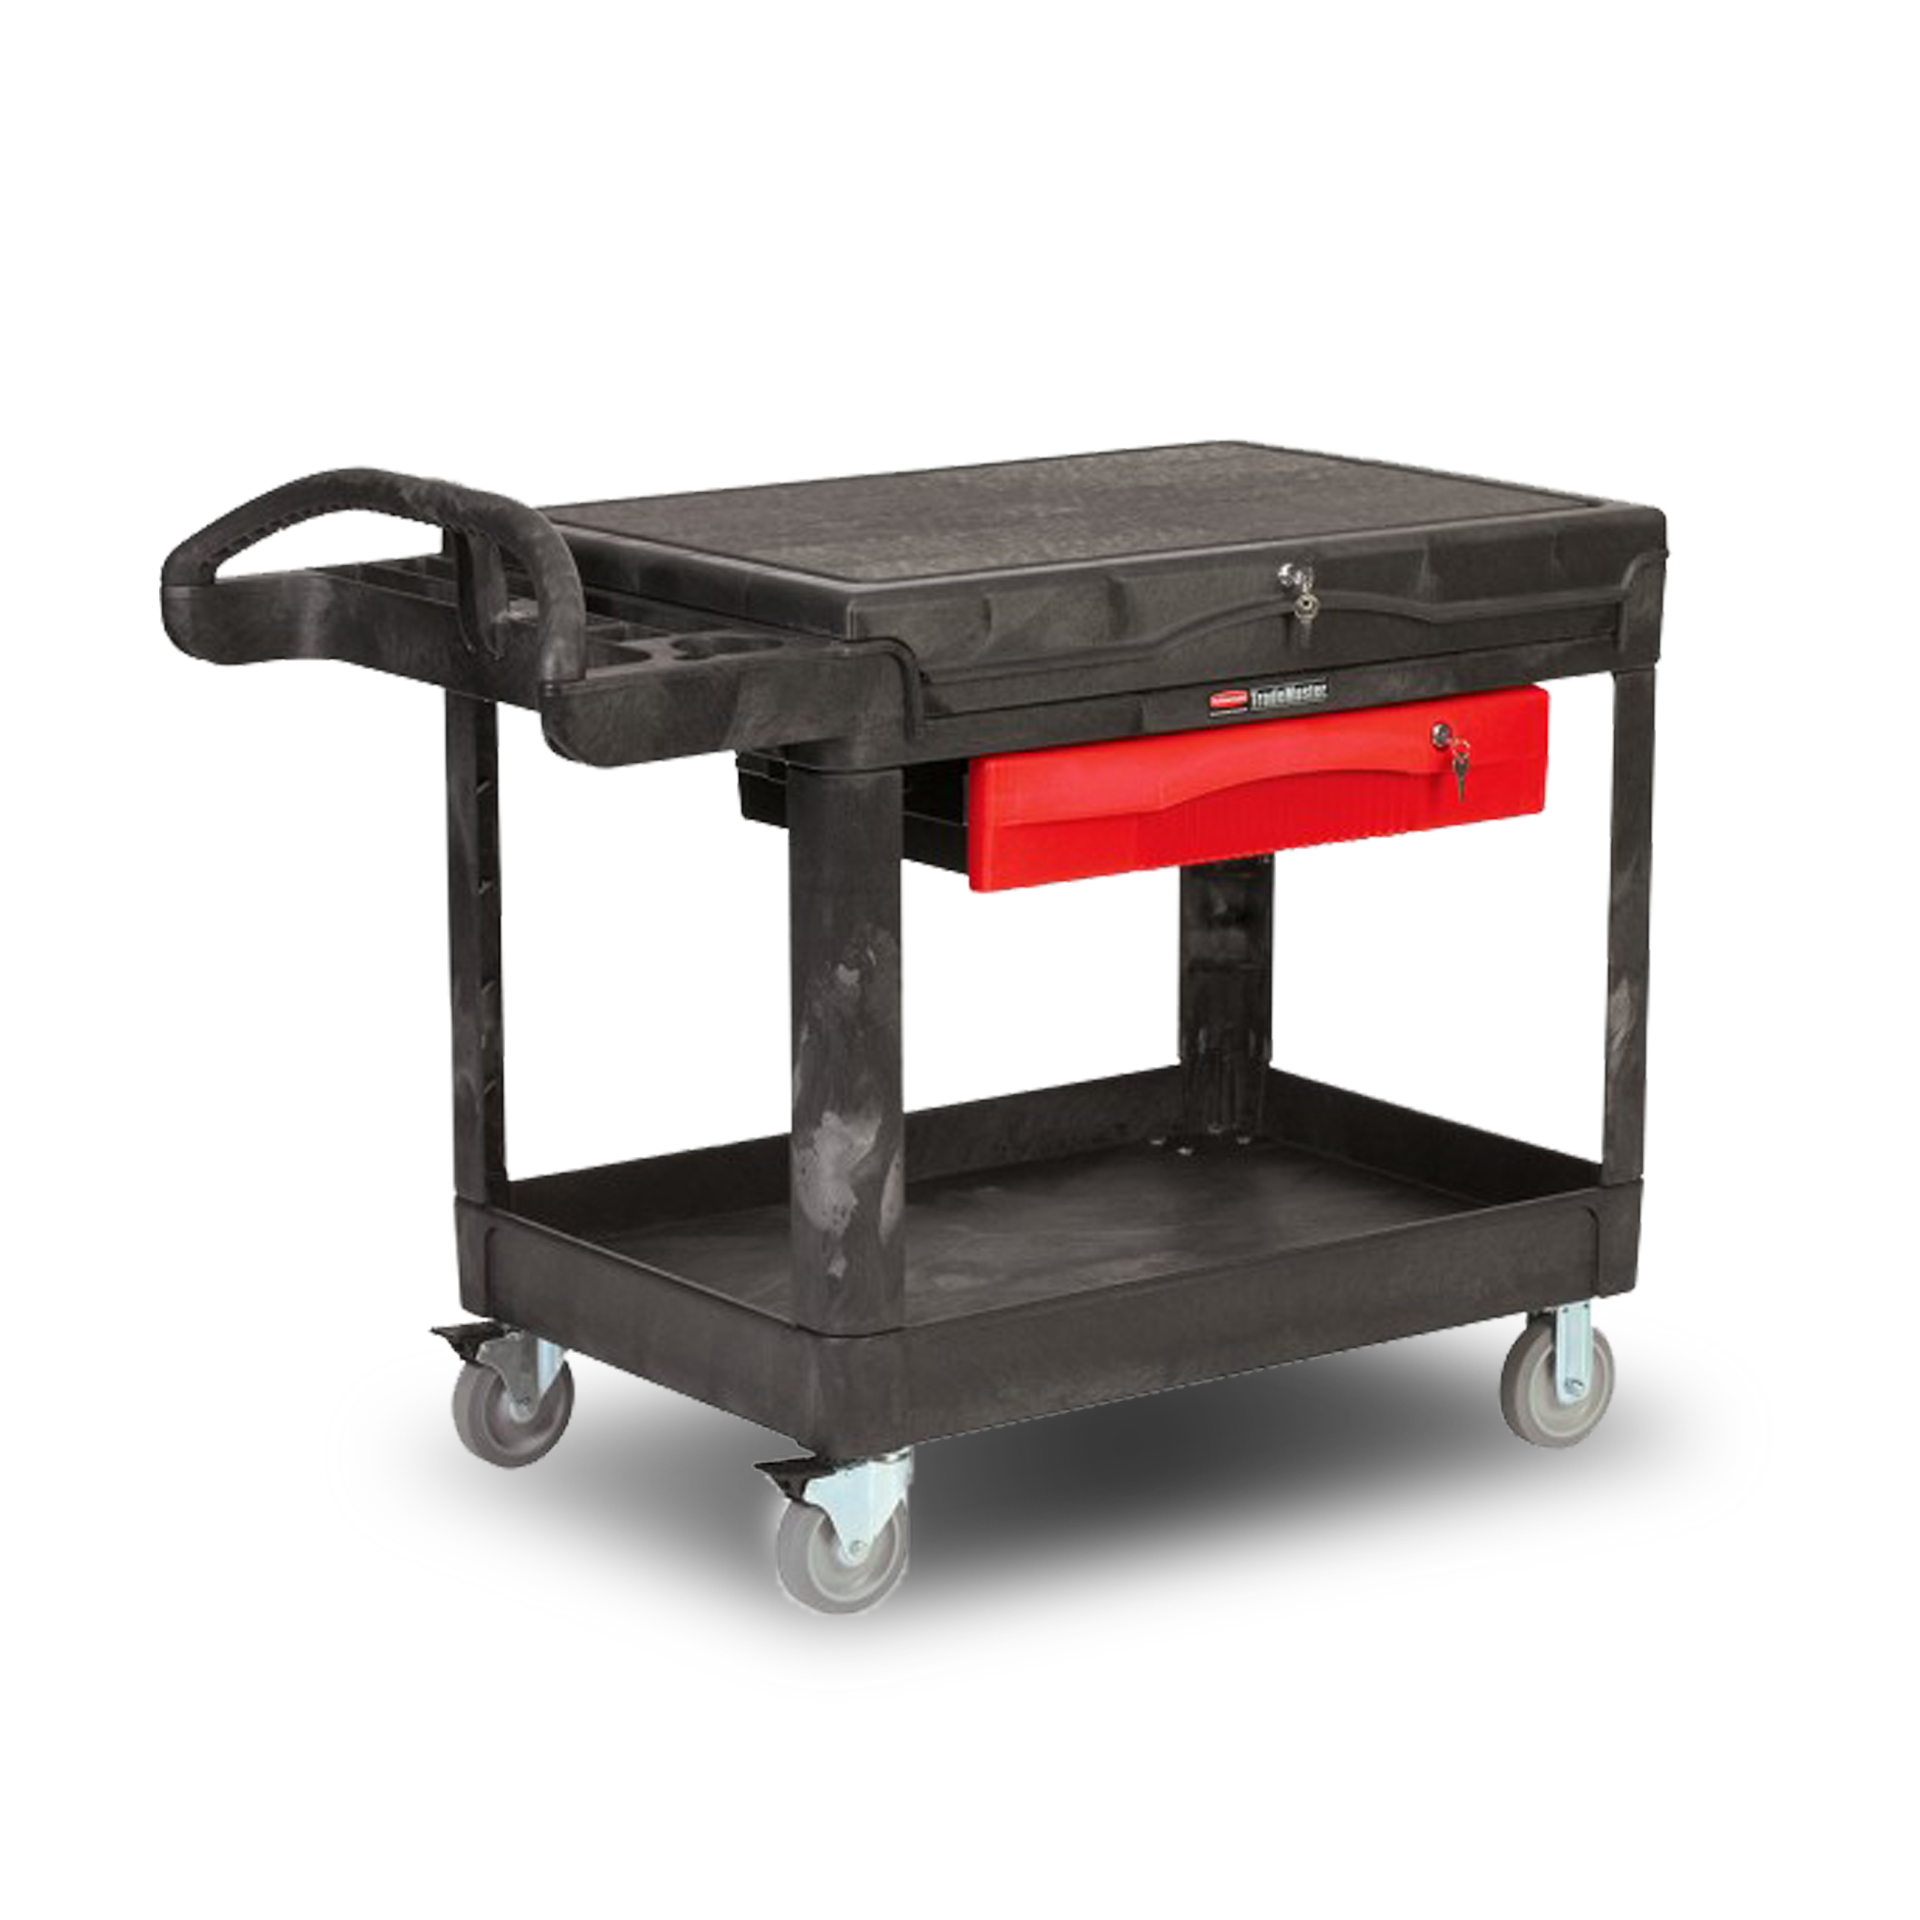 รถเข็นเครื่องมือช่าง TradeMaster® Professional Contractors Cart สีดำ